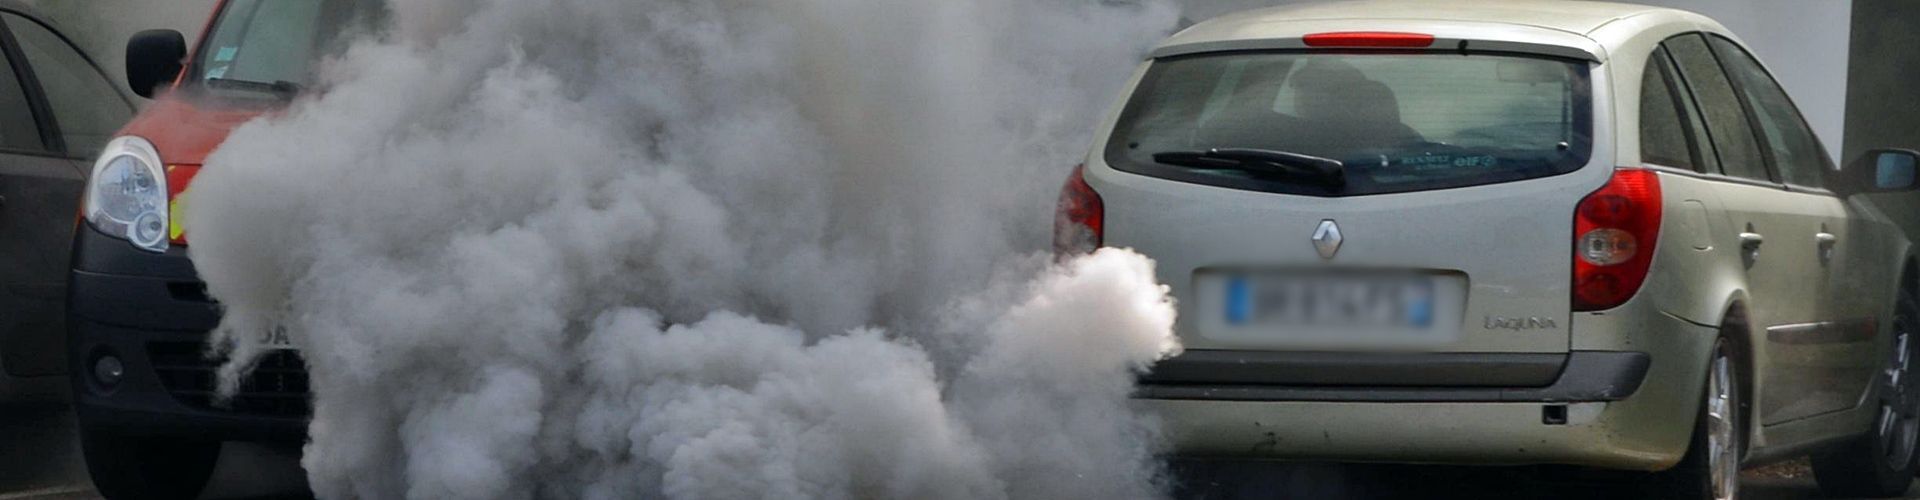 Contaminación ambiental de los coches